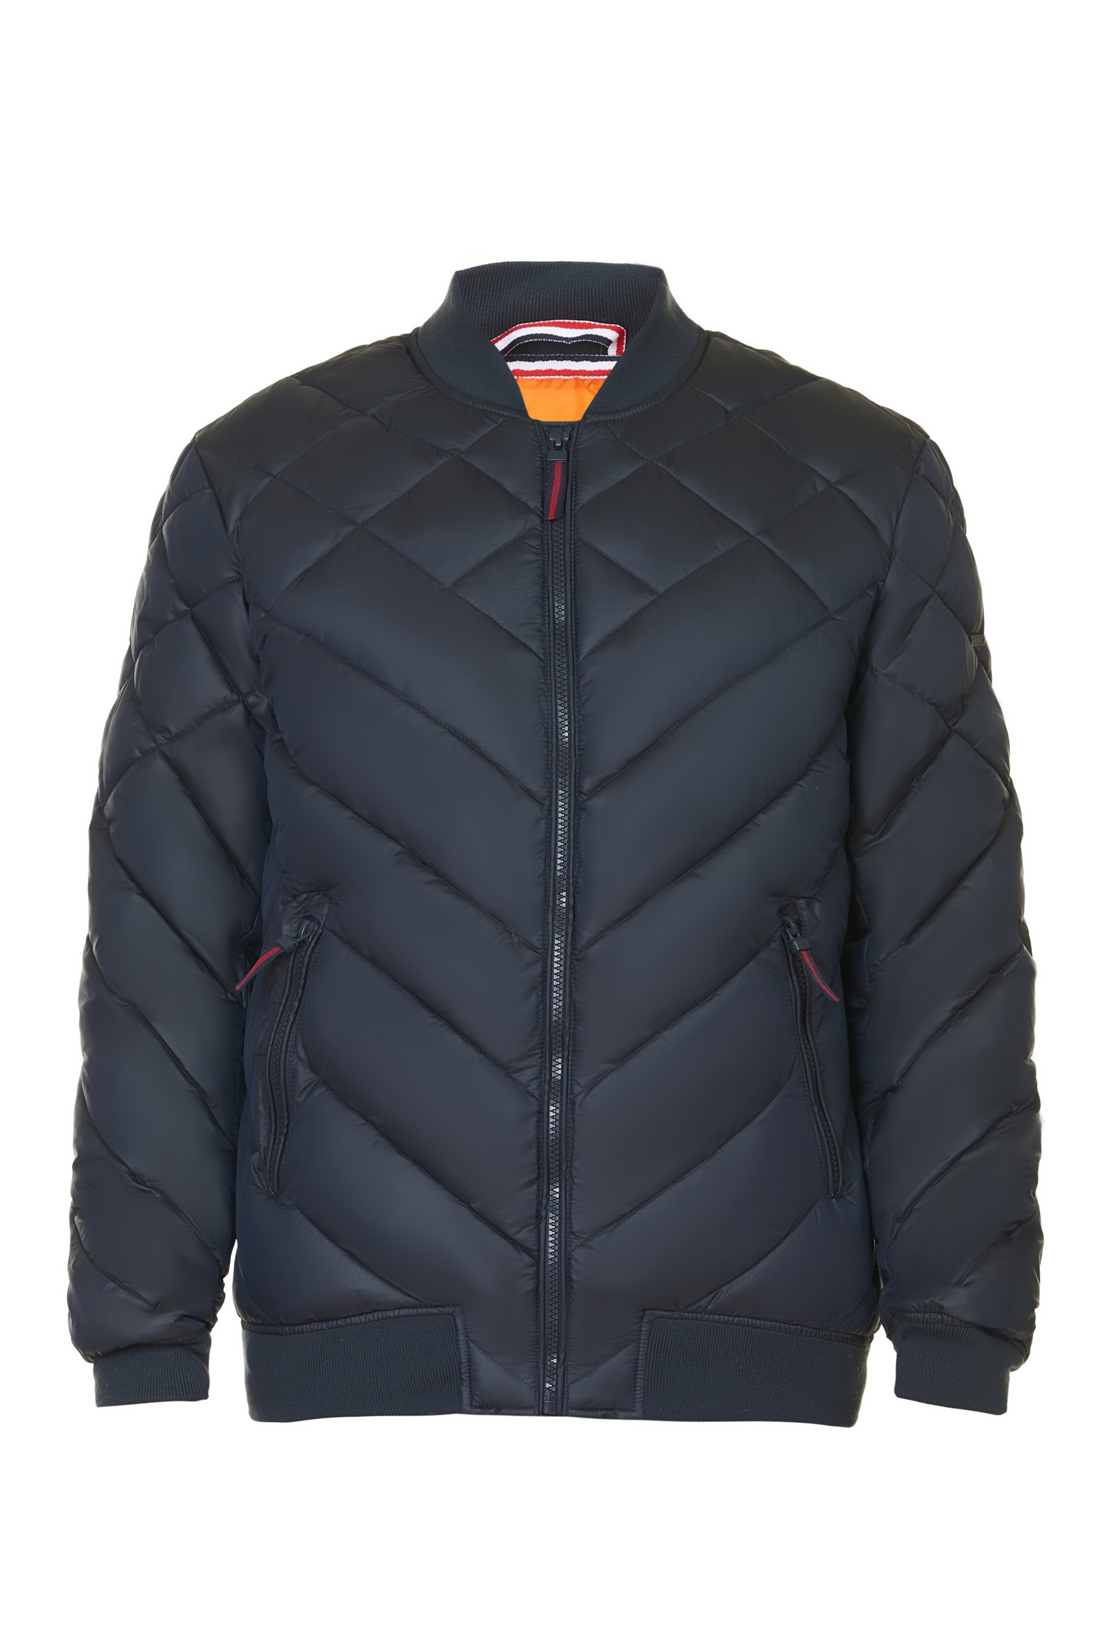 Дутая куртка-бомбер (арт. baon B537552), размер L, цвет синий Дутая куртка-бомбер (арт. baon B537552) - фото 3